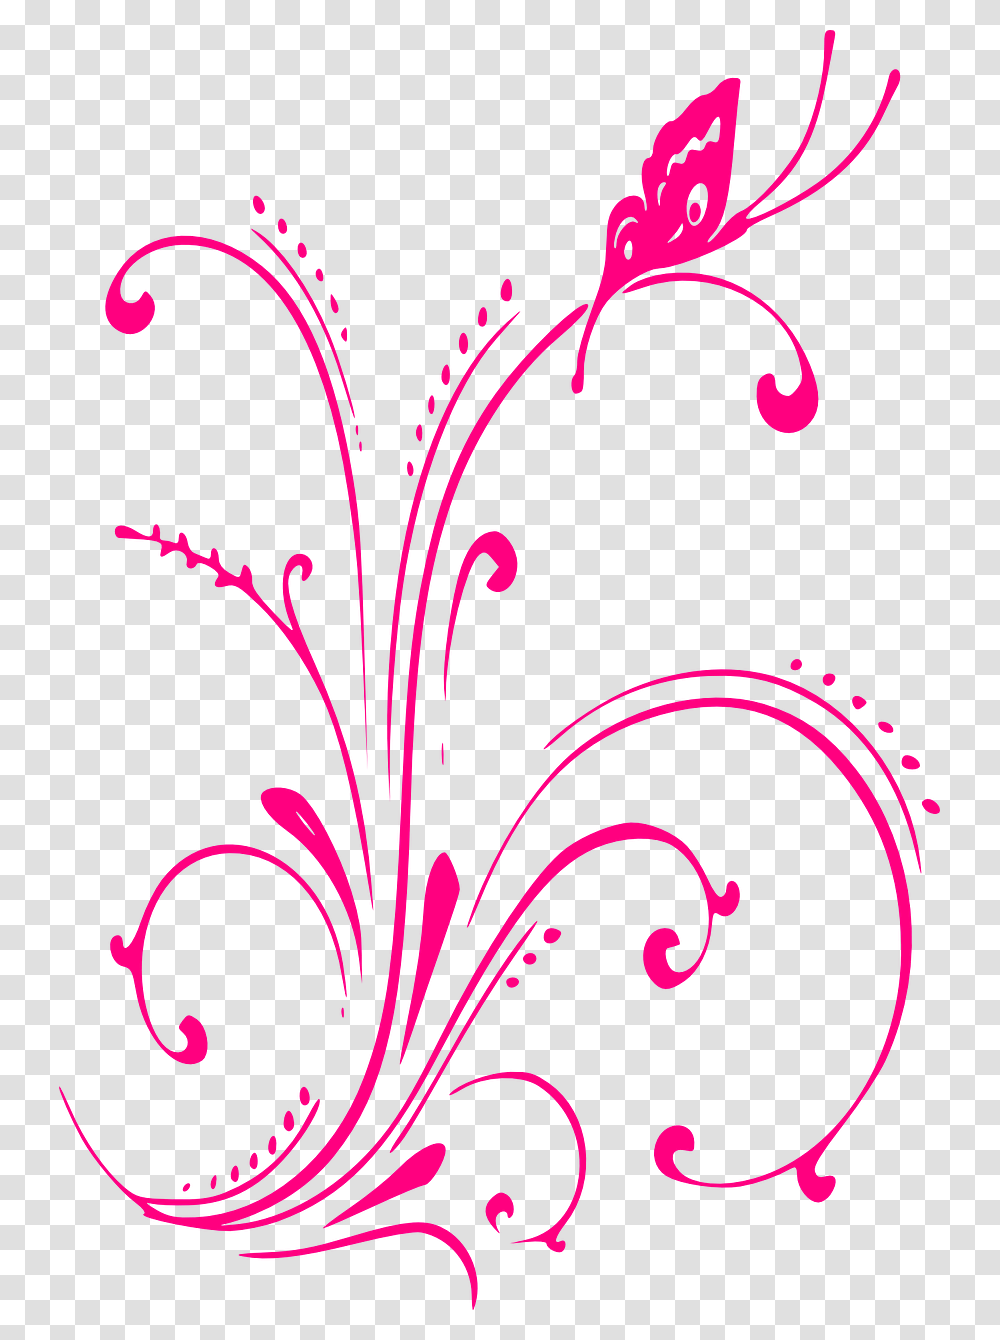 Royal Blue Border Wedding Background, Floral Design, Pattern Transparent Png